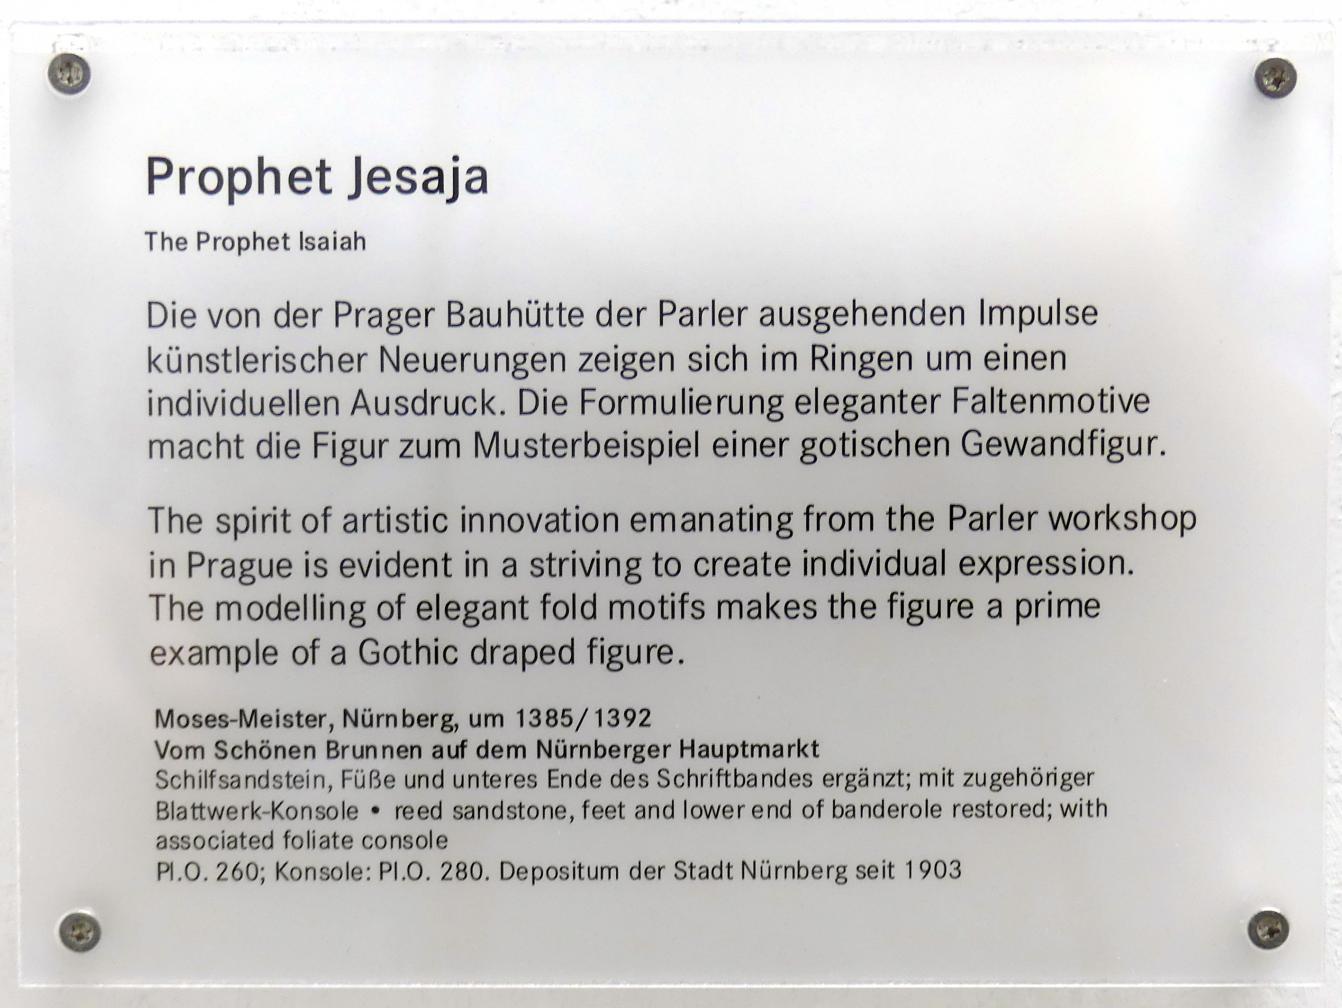 Prophet Jesaja, Nürnberg, Hauptmarkt, jetzt Nürnberg, Germanisches Nationalmuseum, Saal 30, um 1385–1392, Bild 5/5